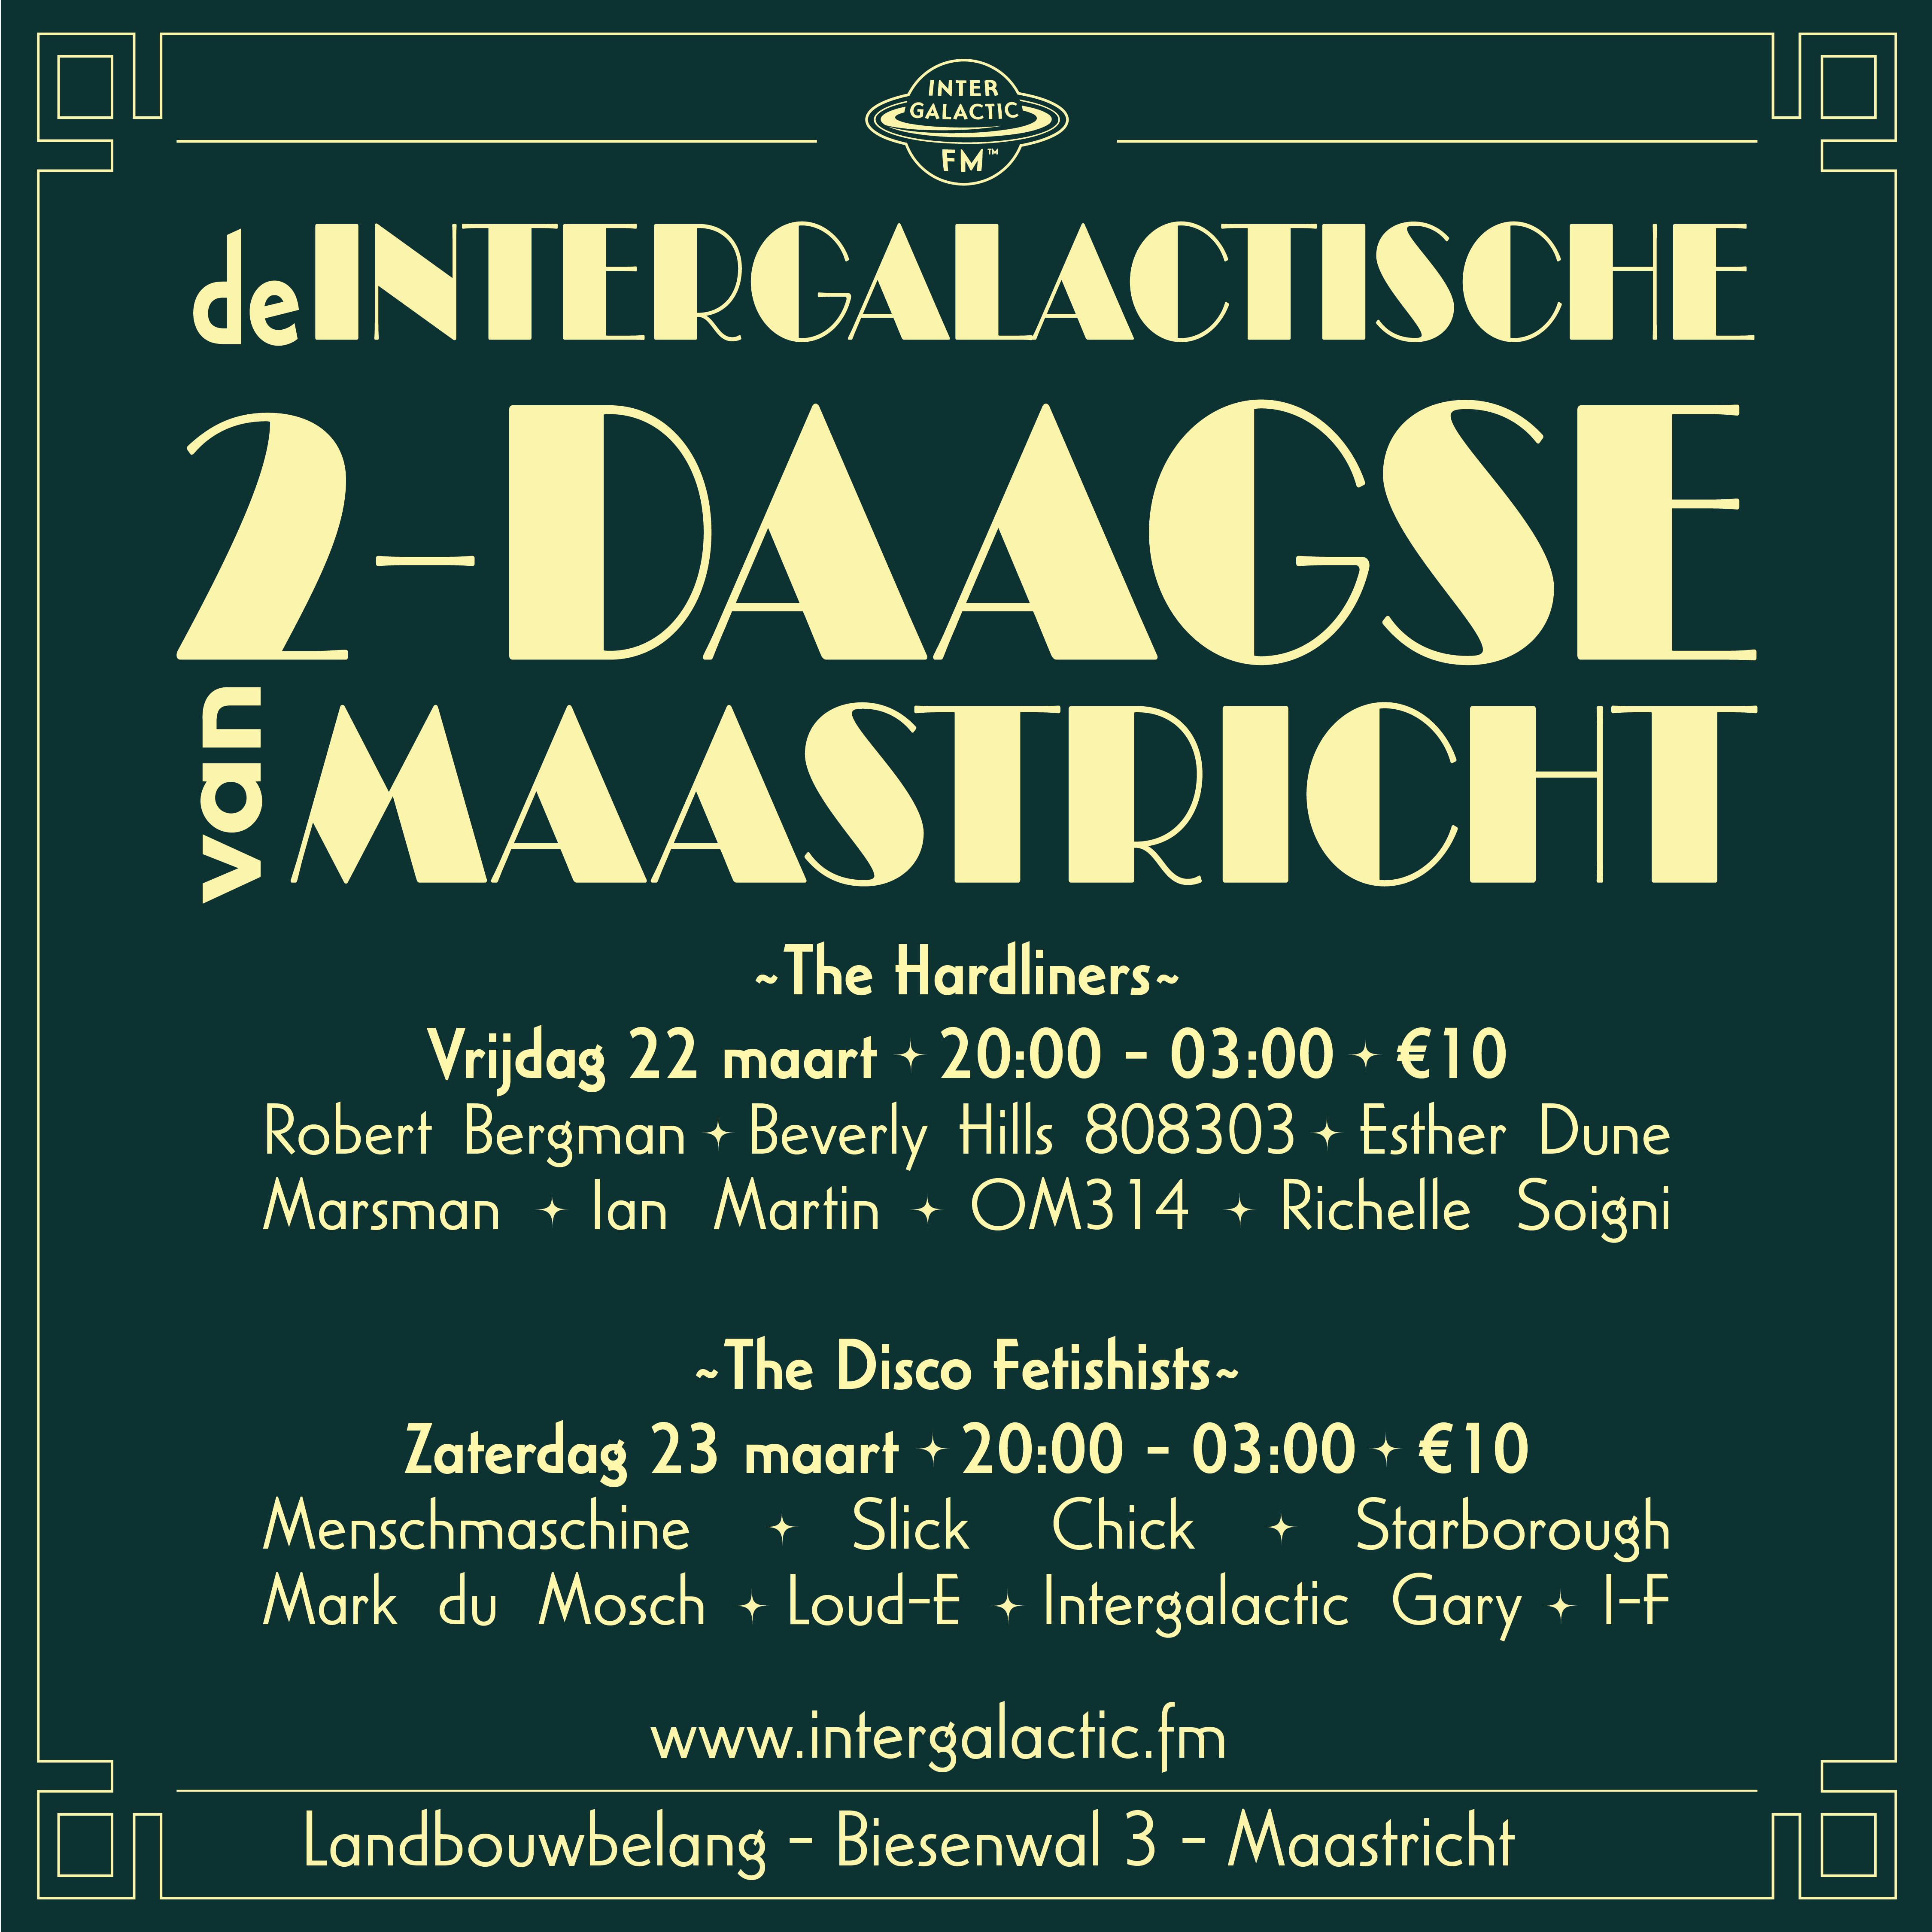 De Intergalactische 2-Daagse Van Maastricht - フライヤー裏